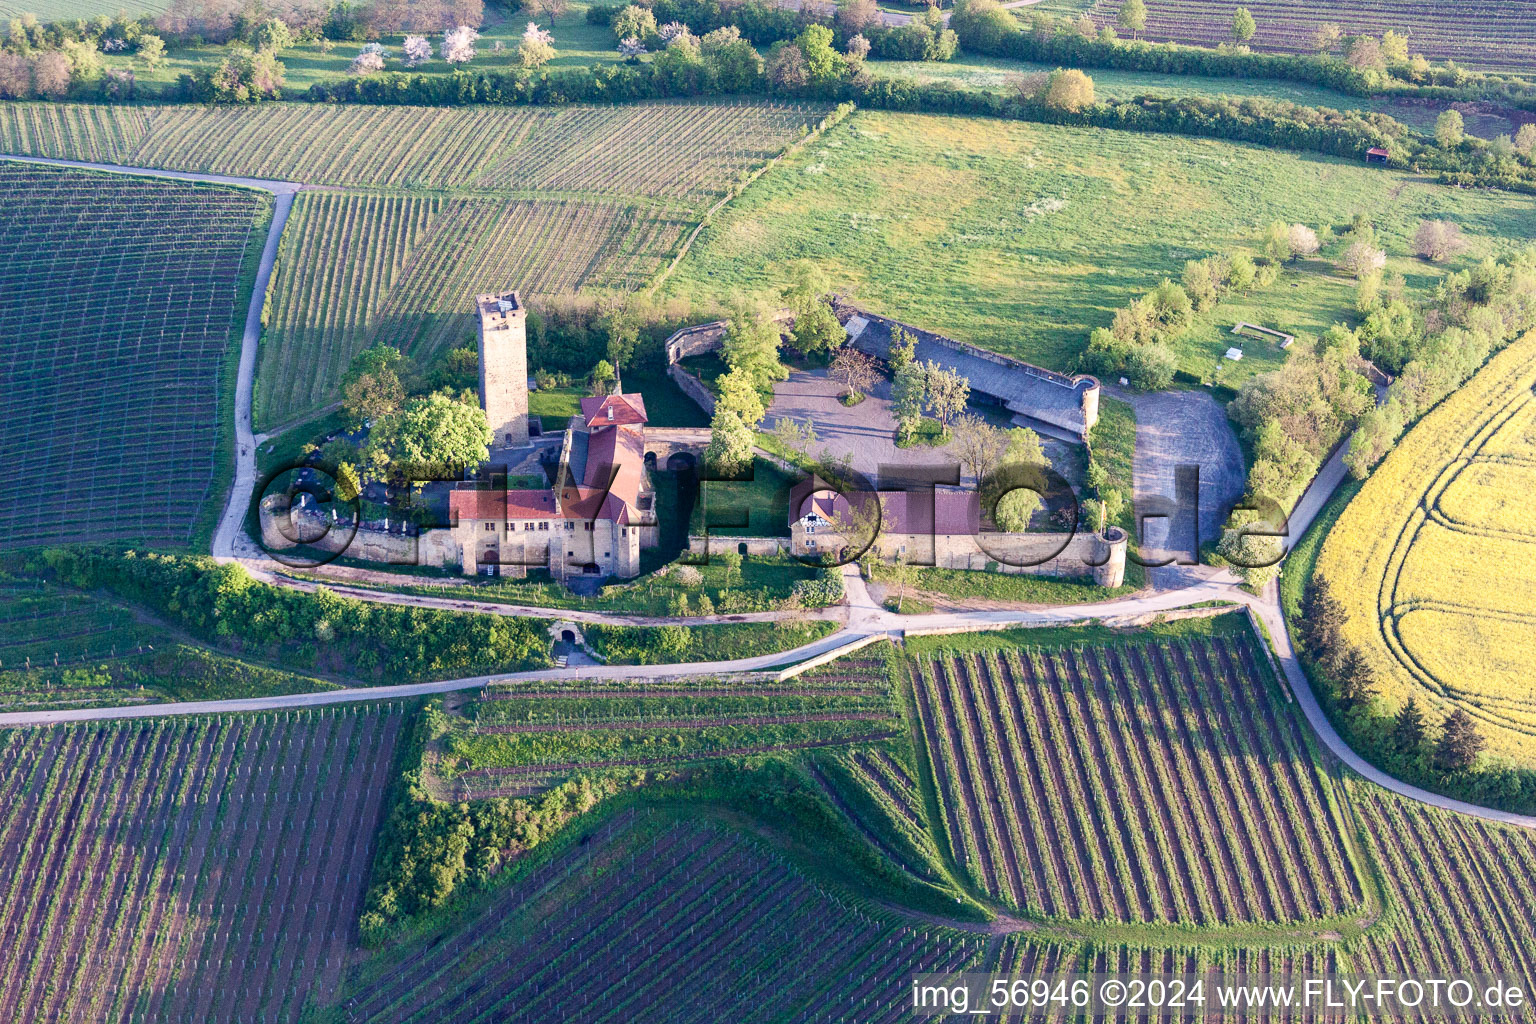 Complexe du château de Veste Ravensburg avec restaurant du château sur une colline avec des vignes à Sulzfeld dans le département Bade-Wurtemberg, Allemagne hors des airs